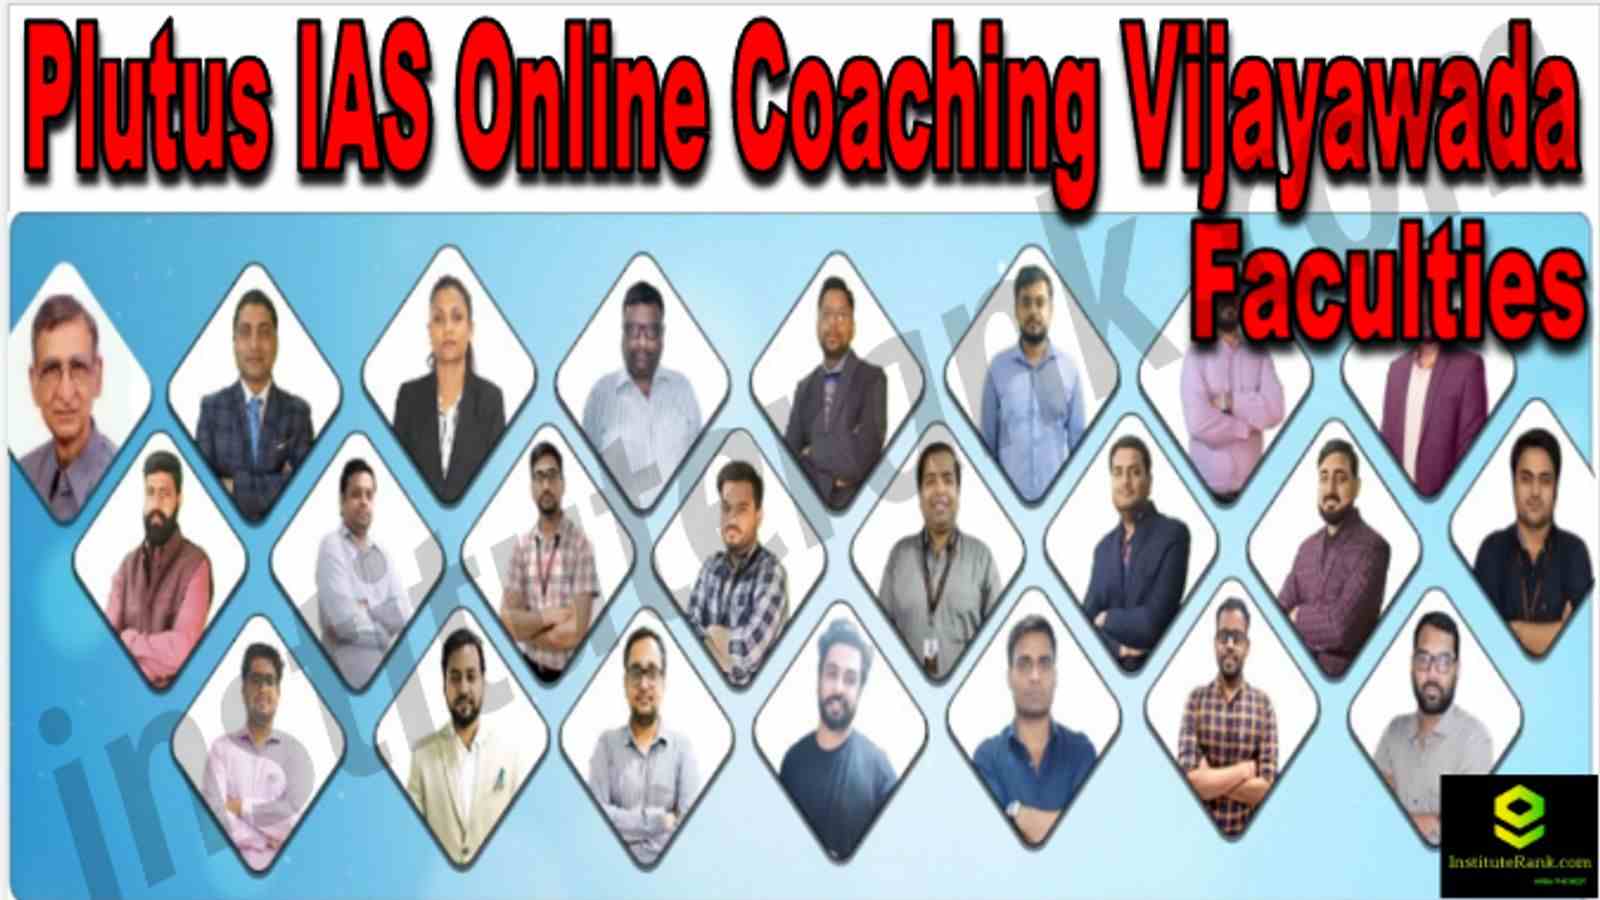 Plutus IAS Online Coaching Vijayawada Reviews Faculties